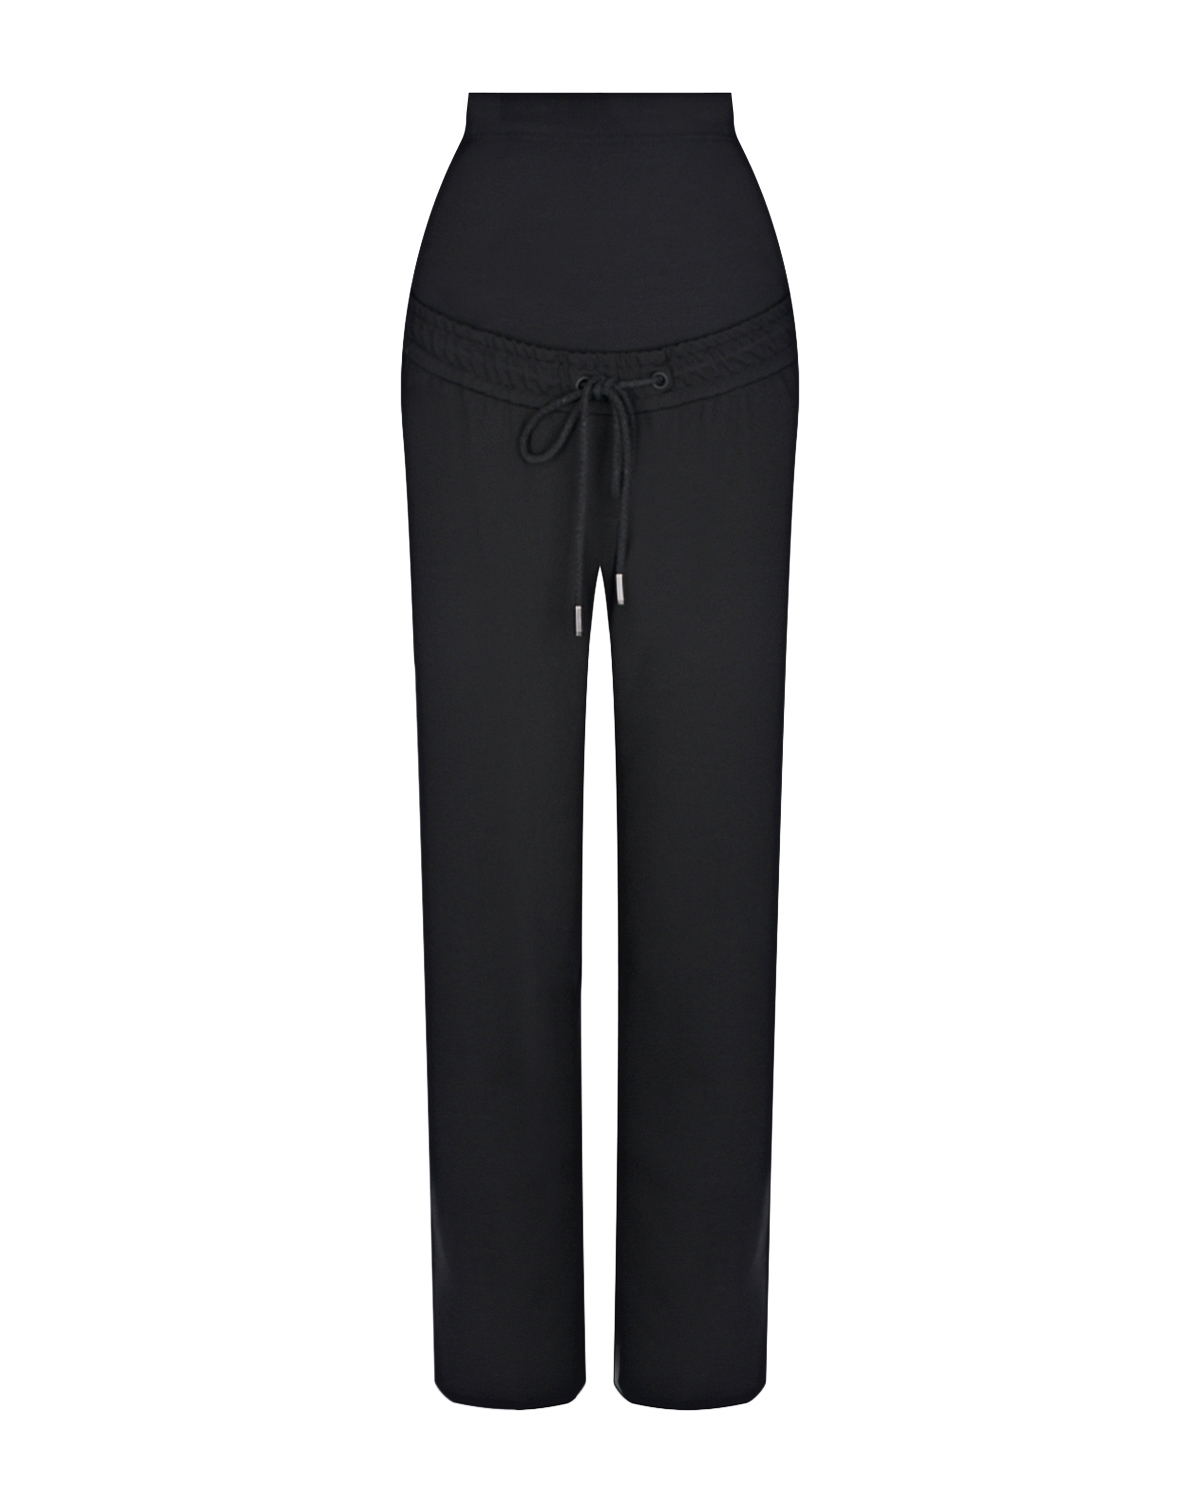 Утепленные черные брюки для беременных Dan Maralex, размер 42, цвет черный